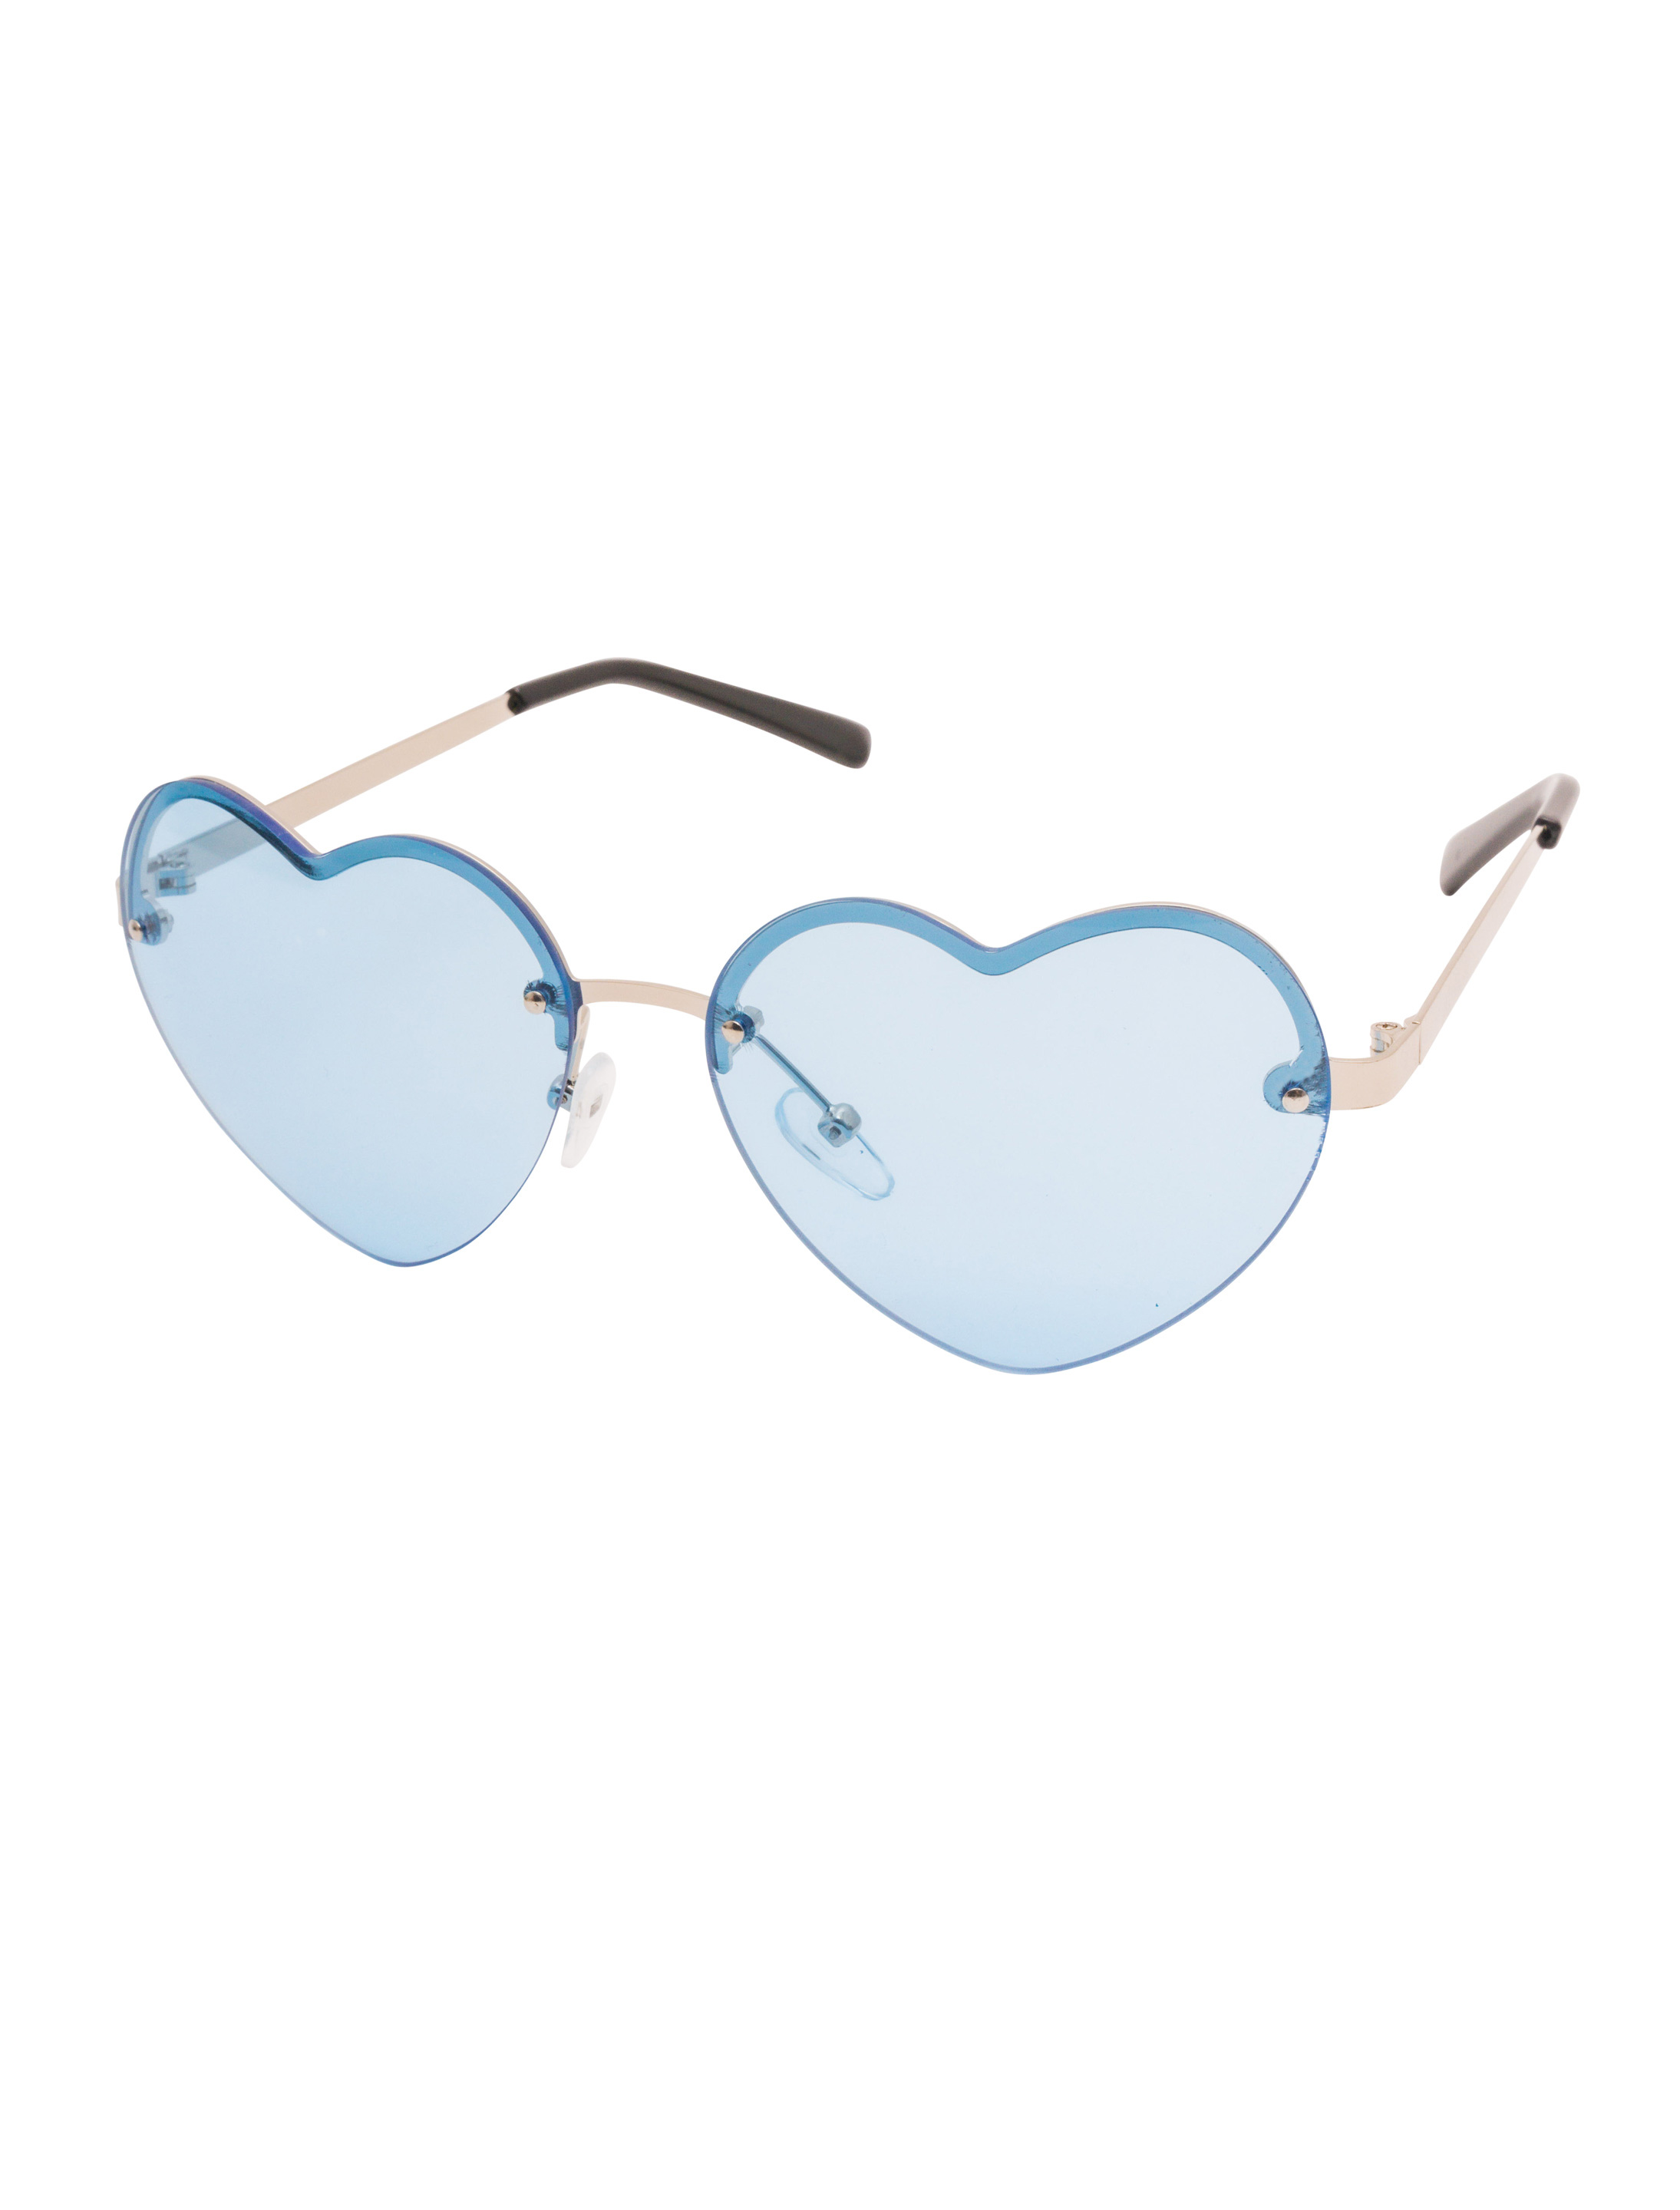 Brille Herz mit Gläsern blau